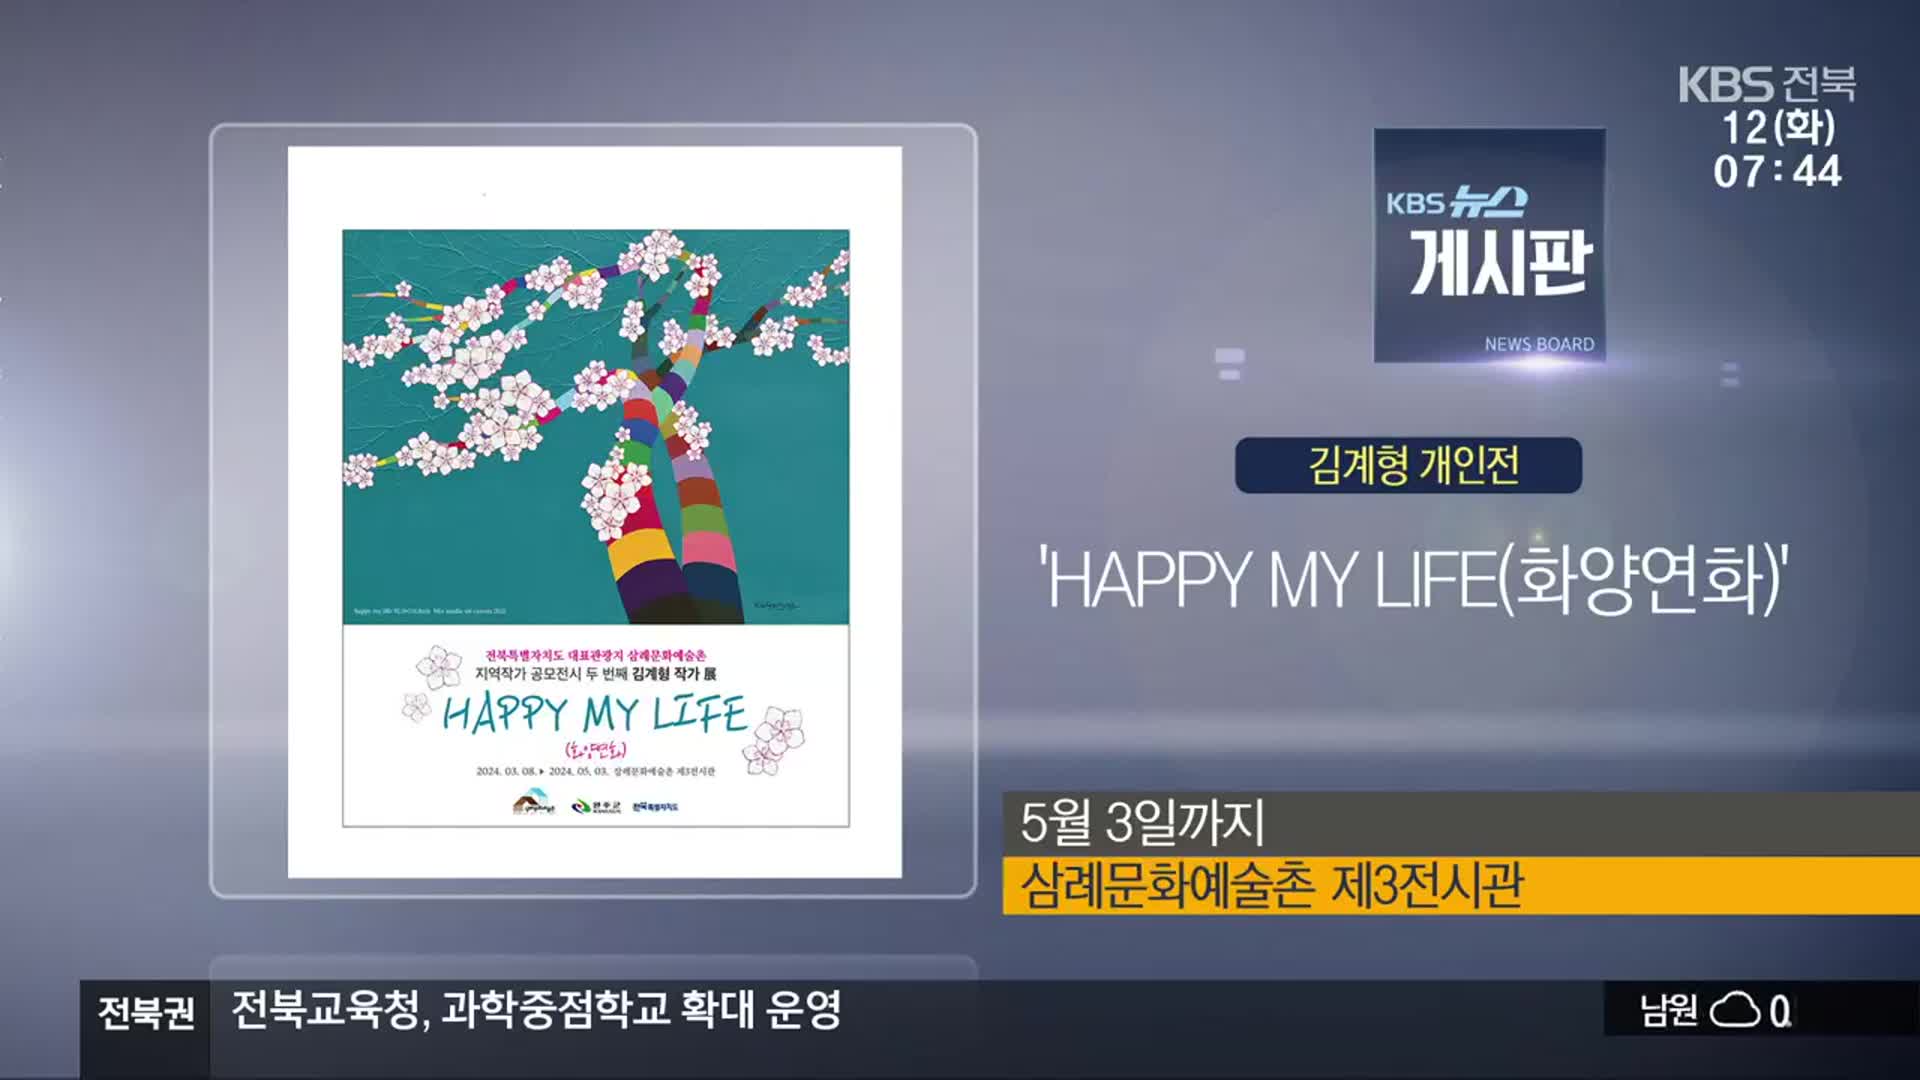 [게시판] 김계형 개인전 ‘HAPPY MY LIFE(화양연화)’ 외